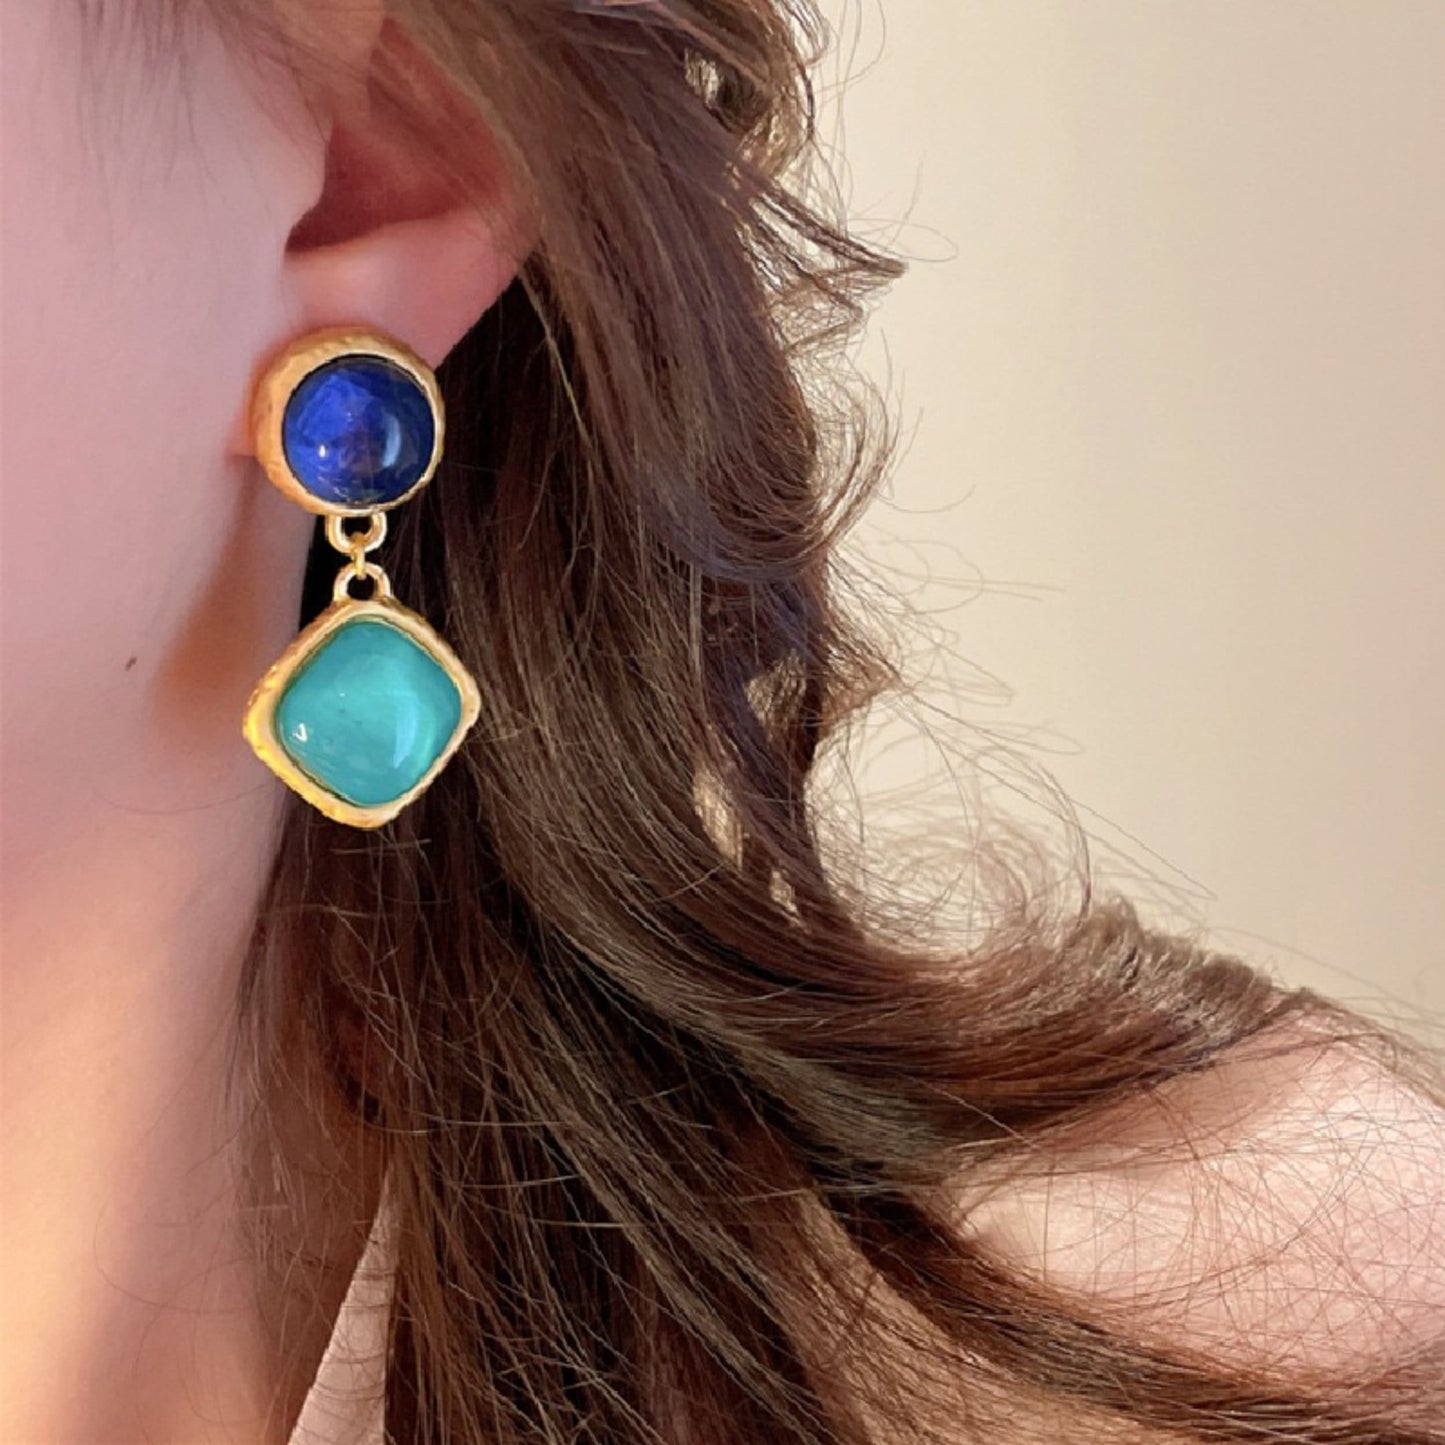 90s vintage style earrings, Aqua green royal blue earrings, Two tone statement earrings, Antique gold dangle drop earrings, Party earrings